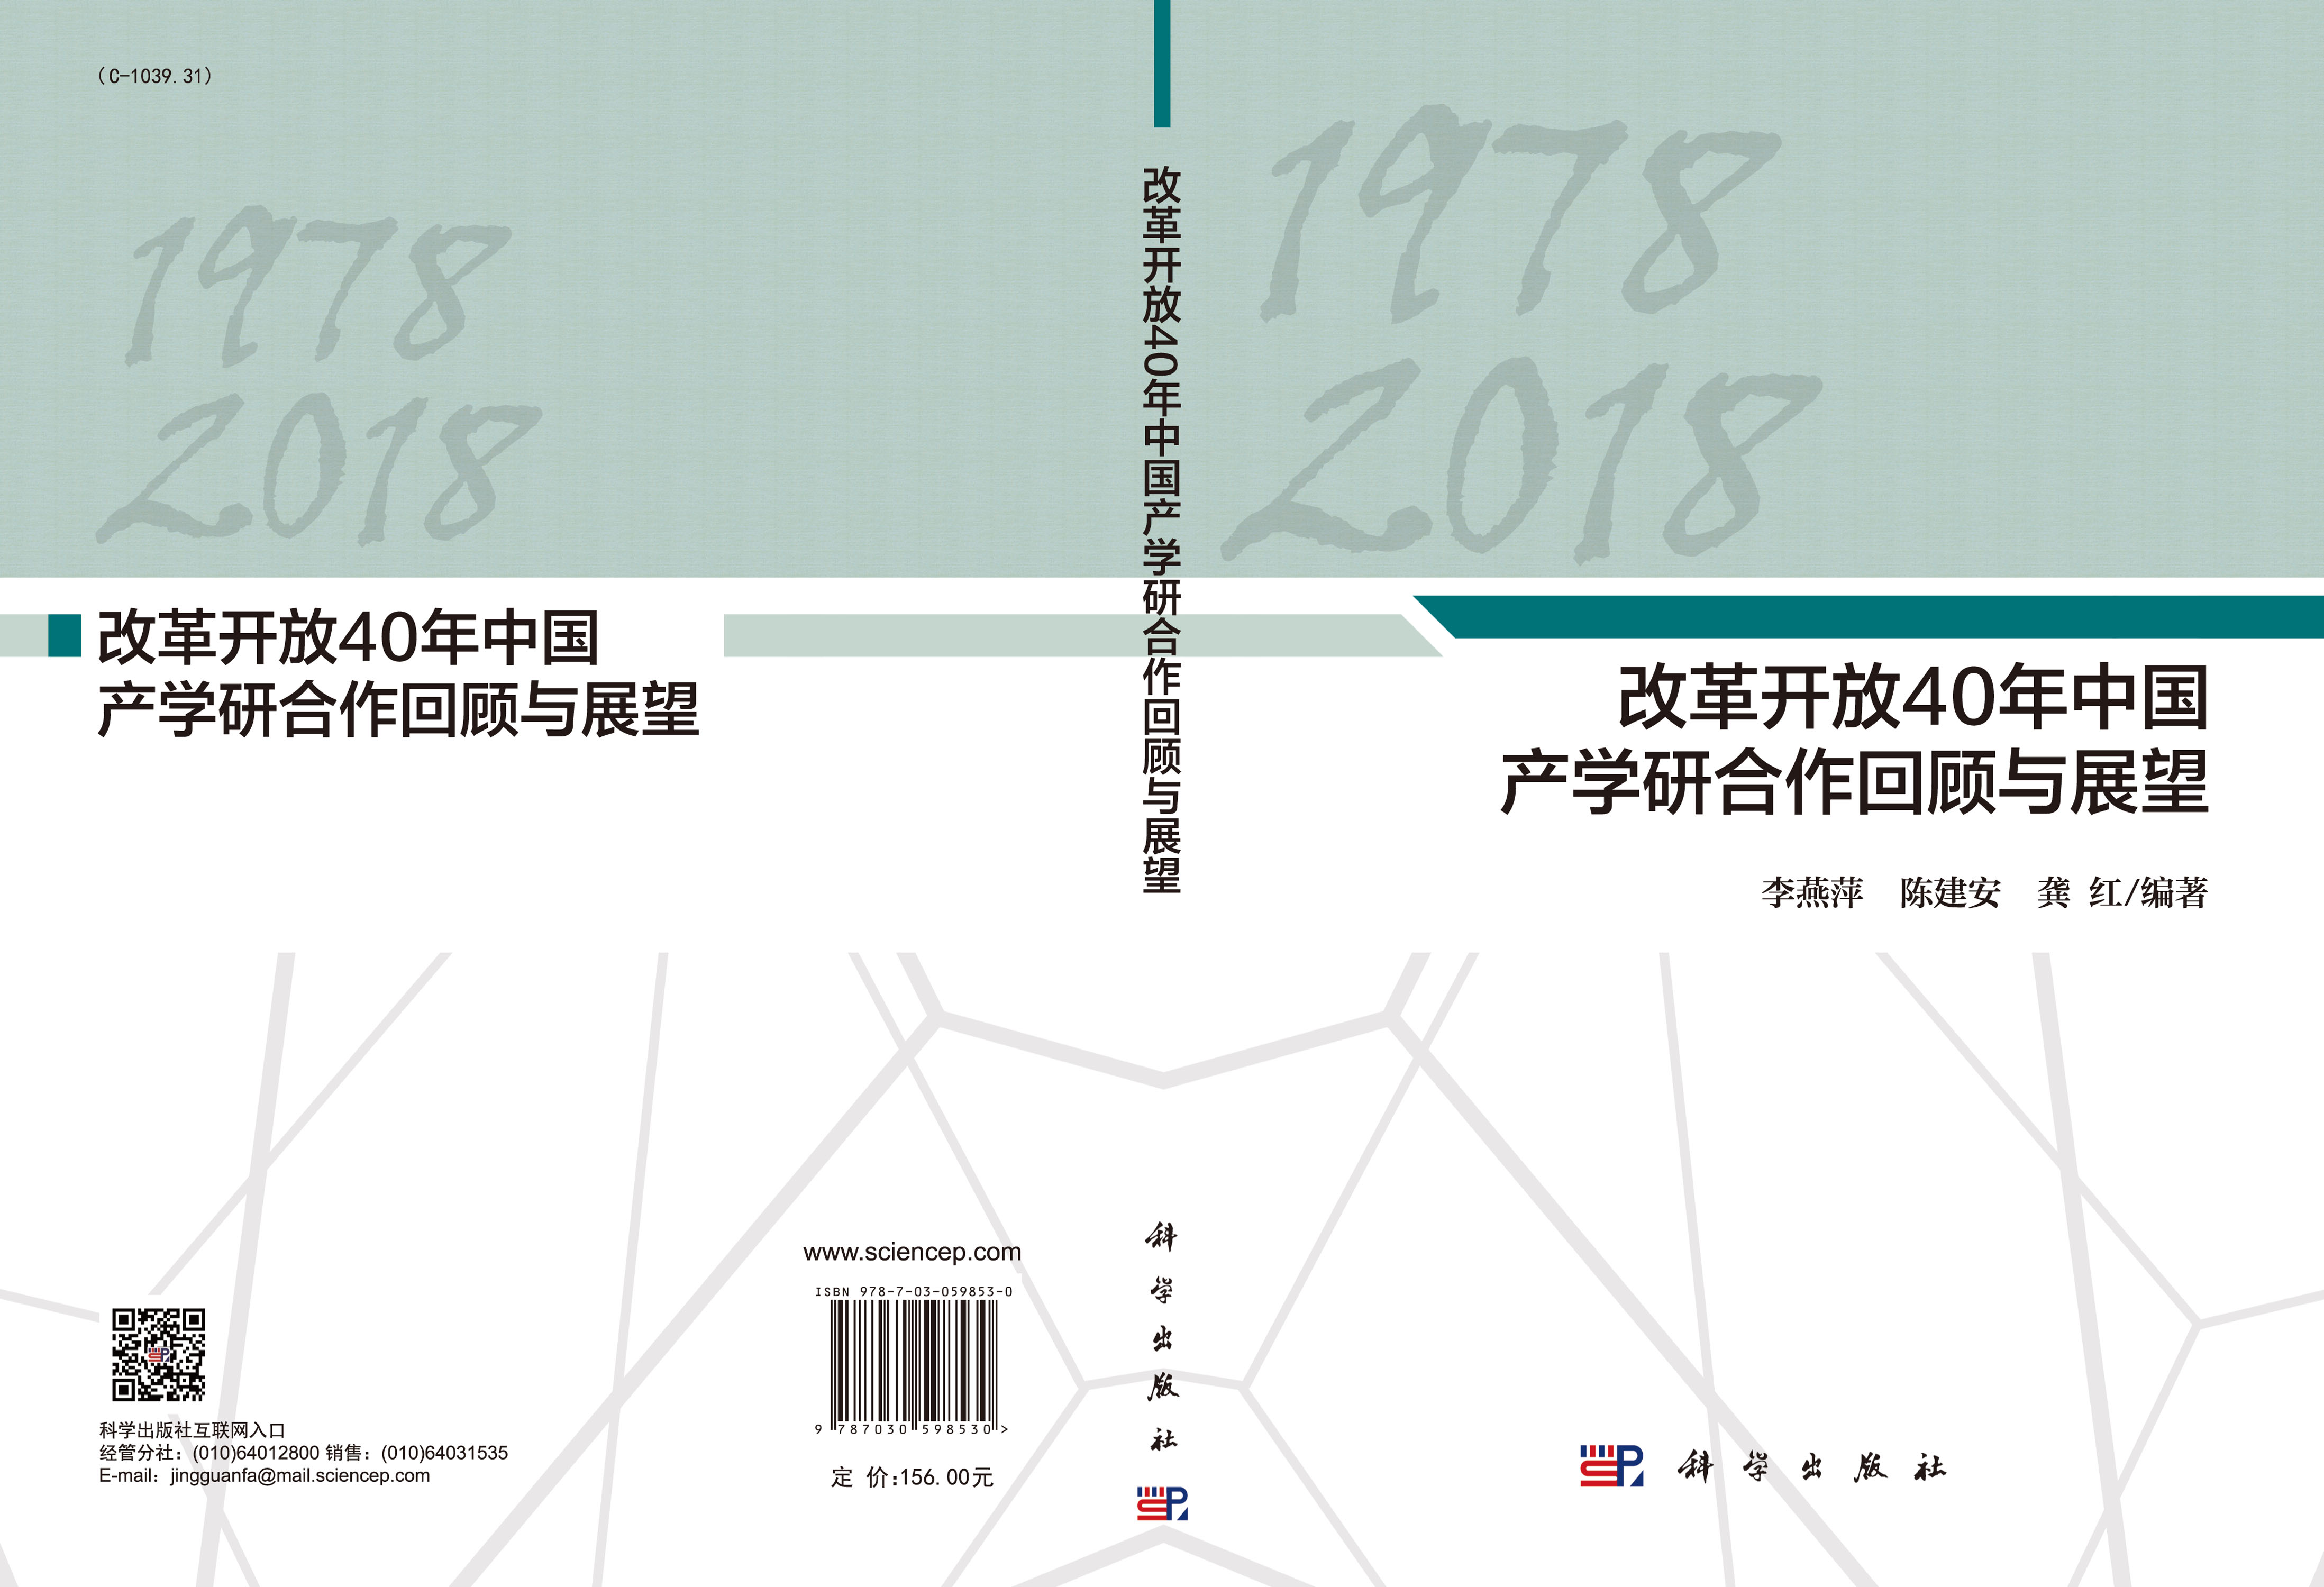 改革开放40年中国产学研合作回顾与展望